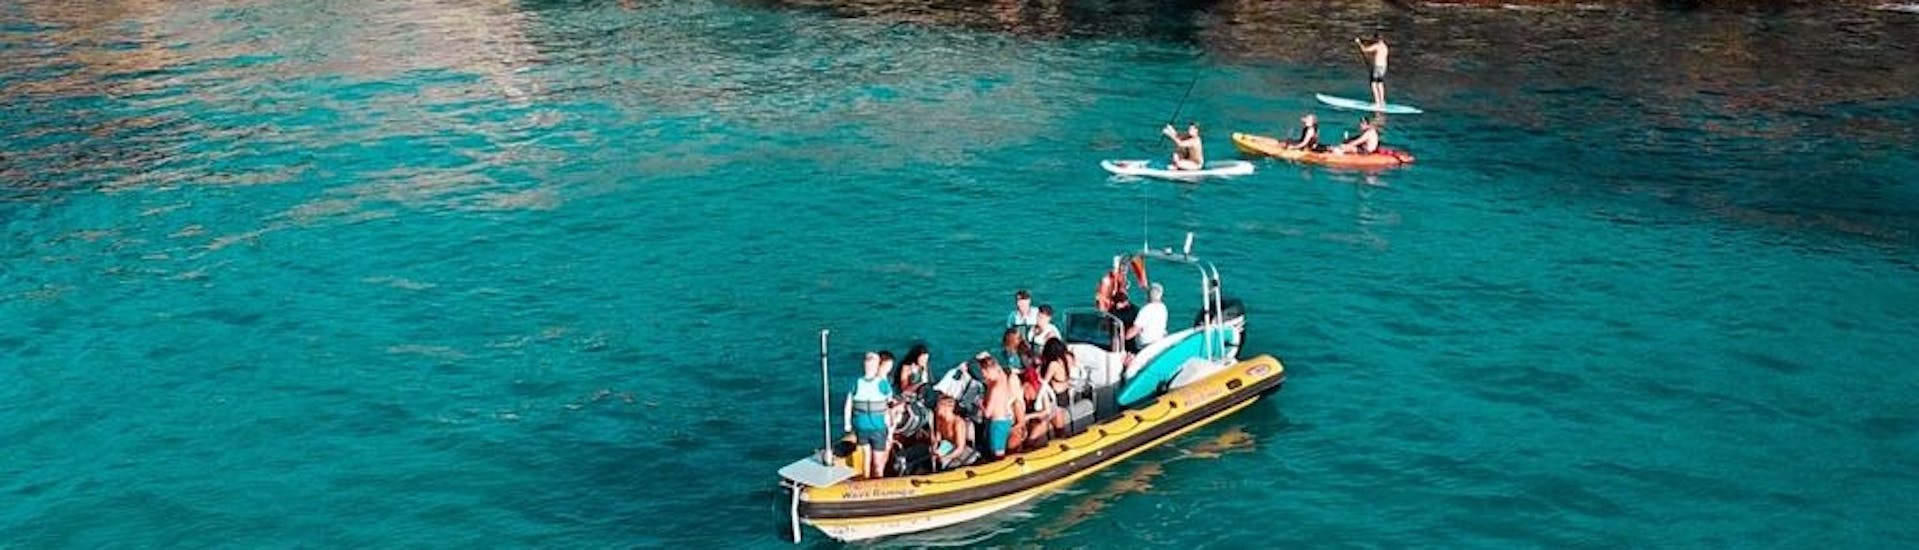 Les participants d'une vedette s'arrêtent pour nager dans les eaux turquoises de la baie d'Alcudia lors d'une excursion en bateau de Can Picafort au parc naturel de Llevant avec North Coast Adventure Mallorca.